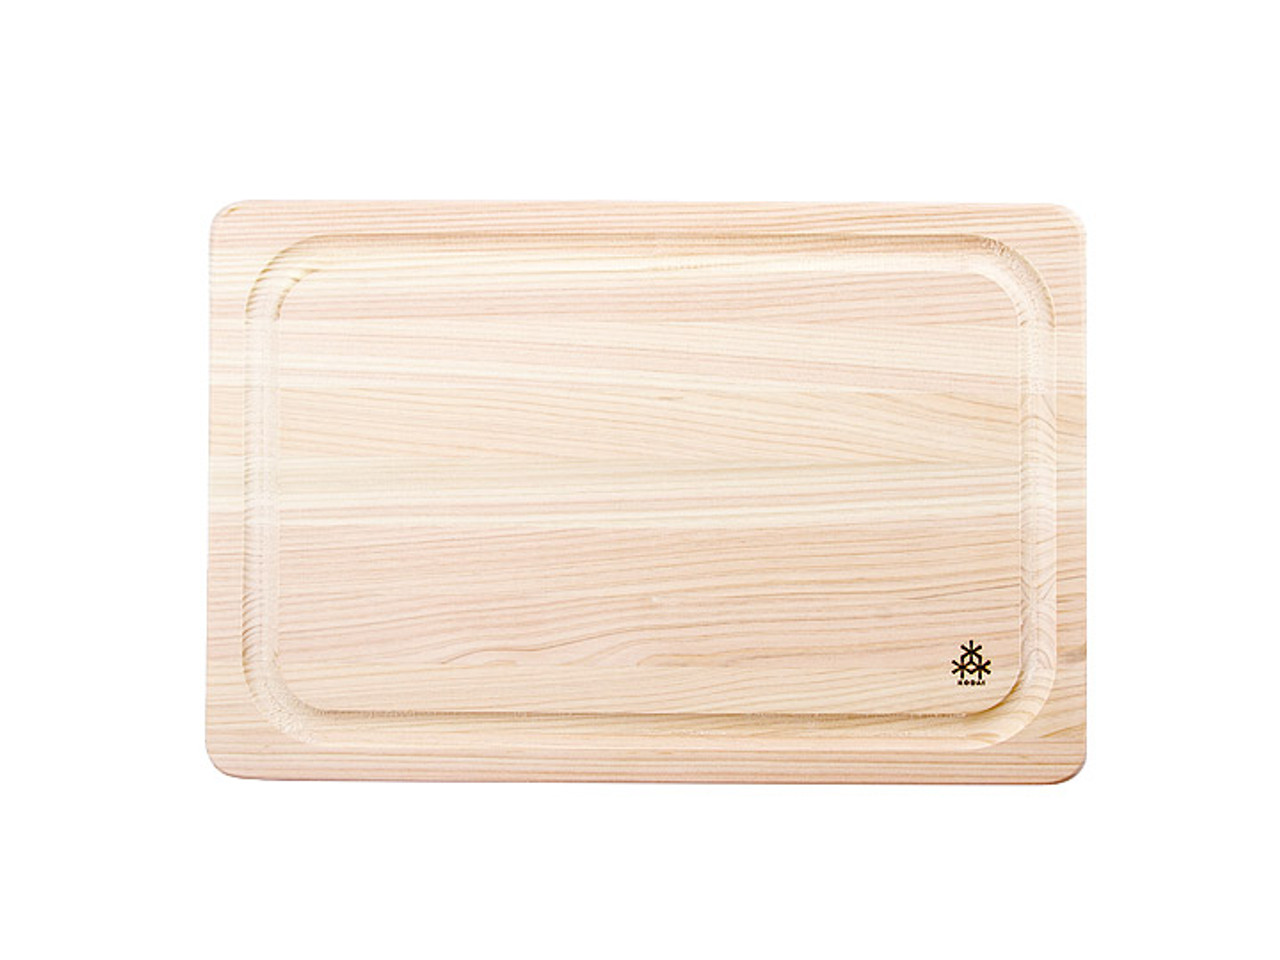 Kiso Hinoki Extra Large Cutting Board 24 x 18 x 1.5